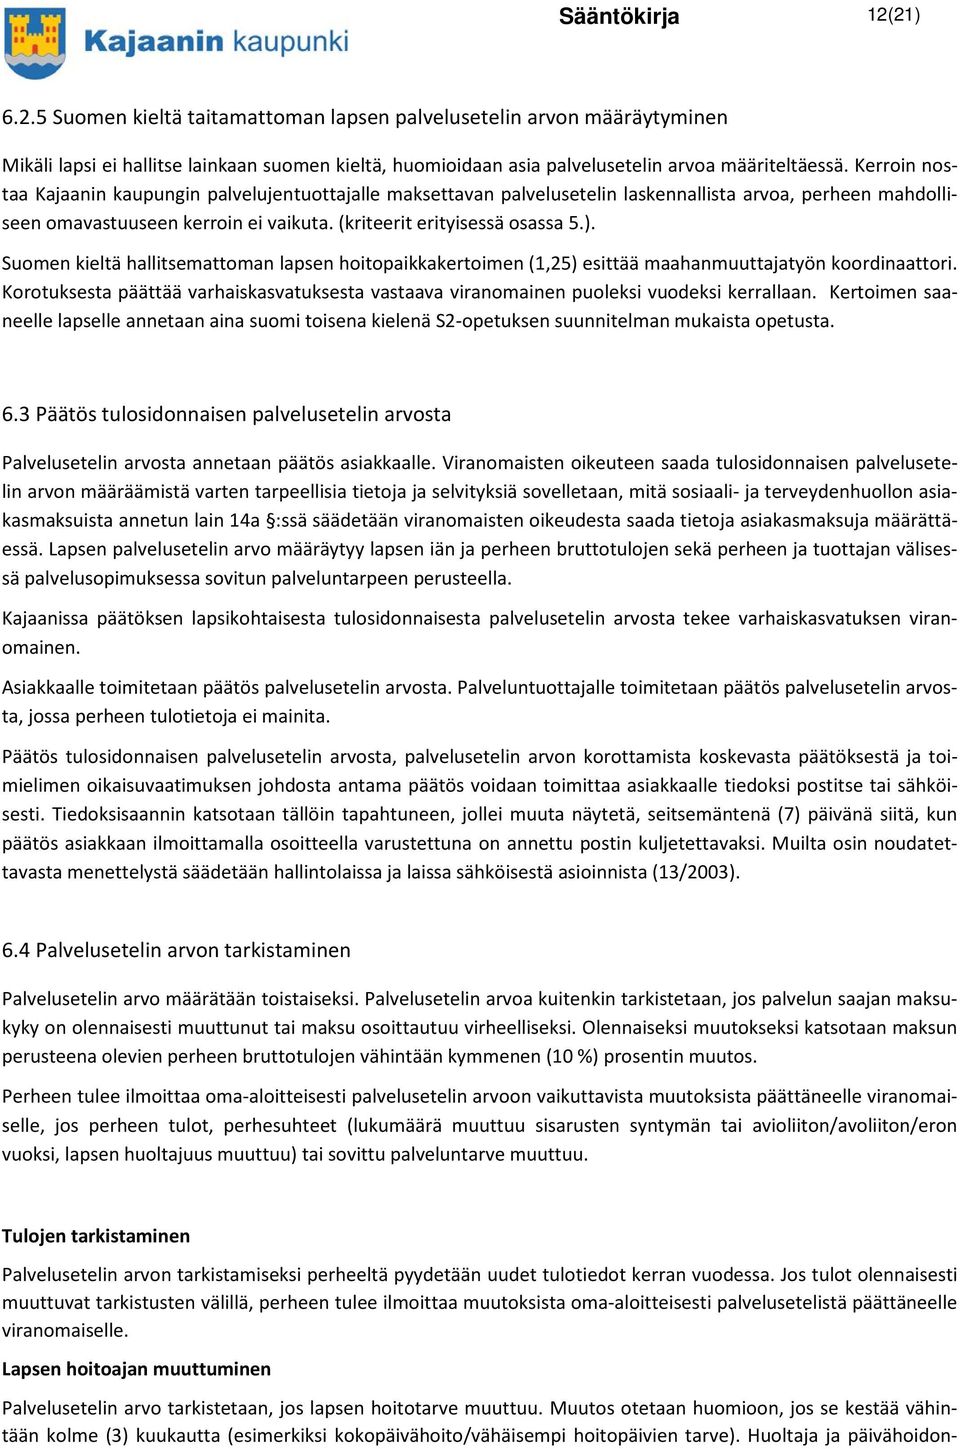 Suomen kieltä hallitsemattoman lapsen hoitopaikkakertoimen (1,25) esittää maahanmuuttajatyön koordinaattori.